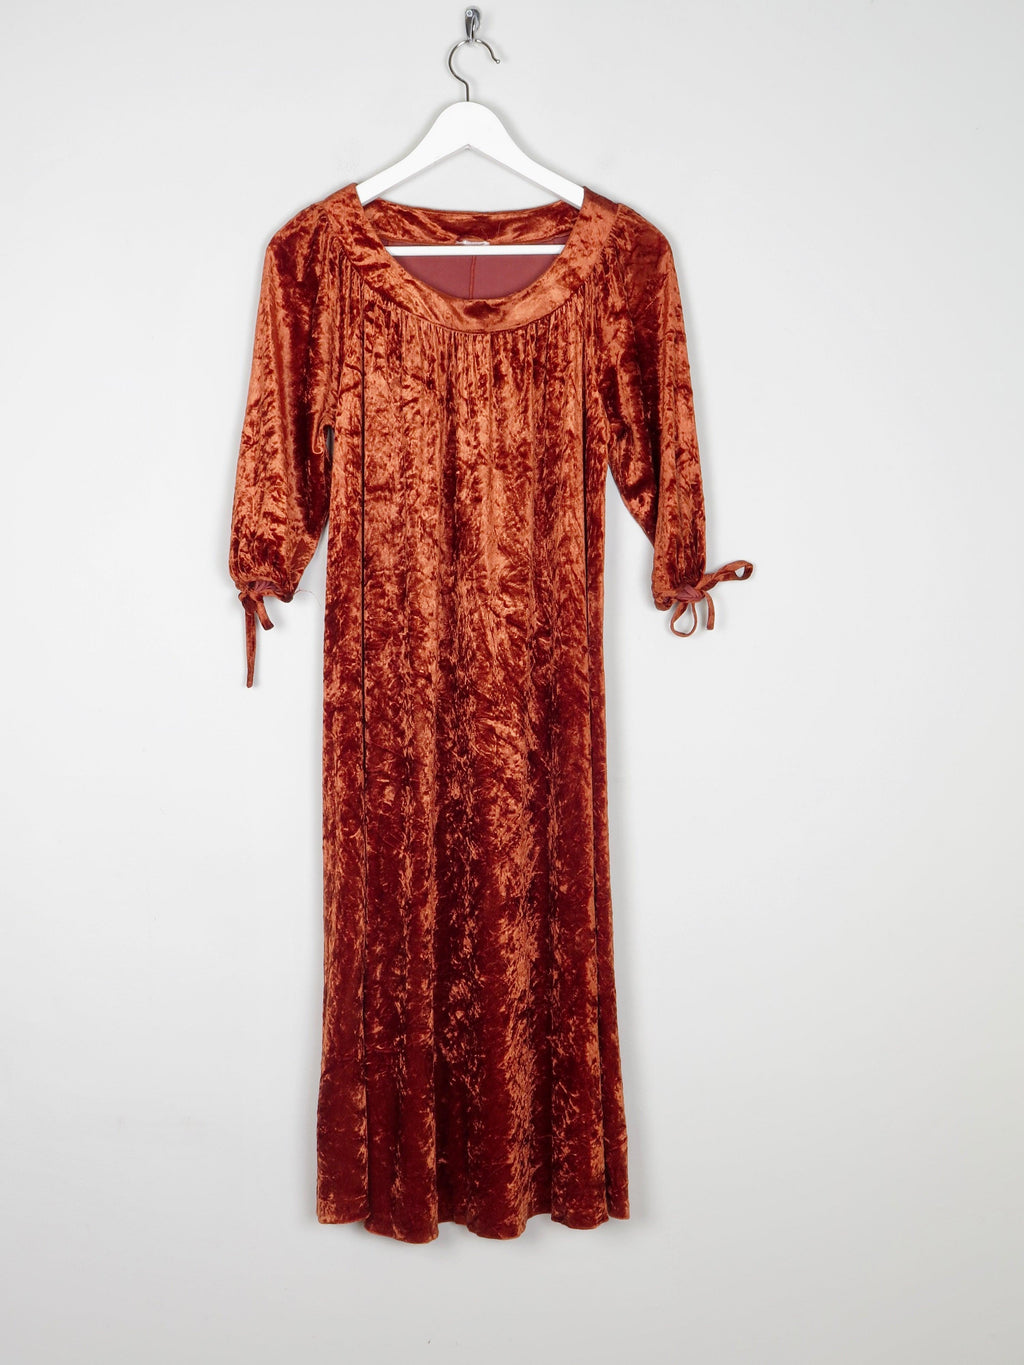 Burnt Orange Velvet 1970s VIntage Dress S - The Harlequin